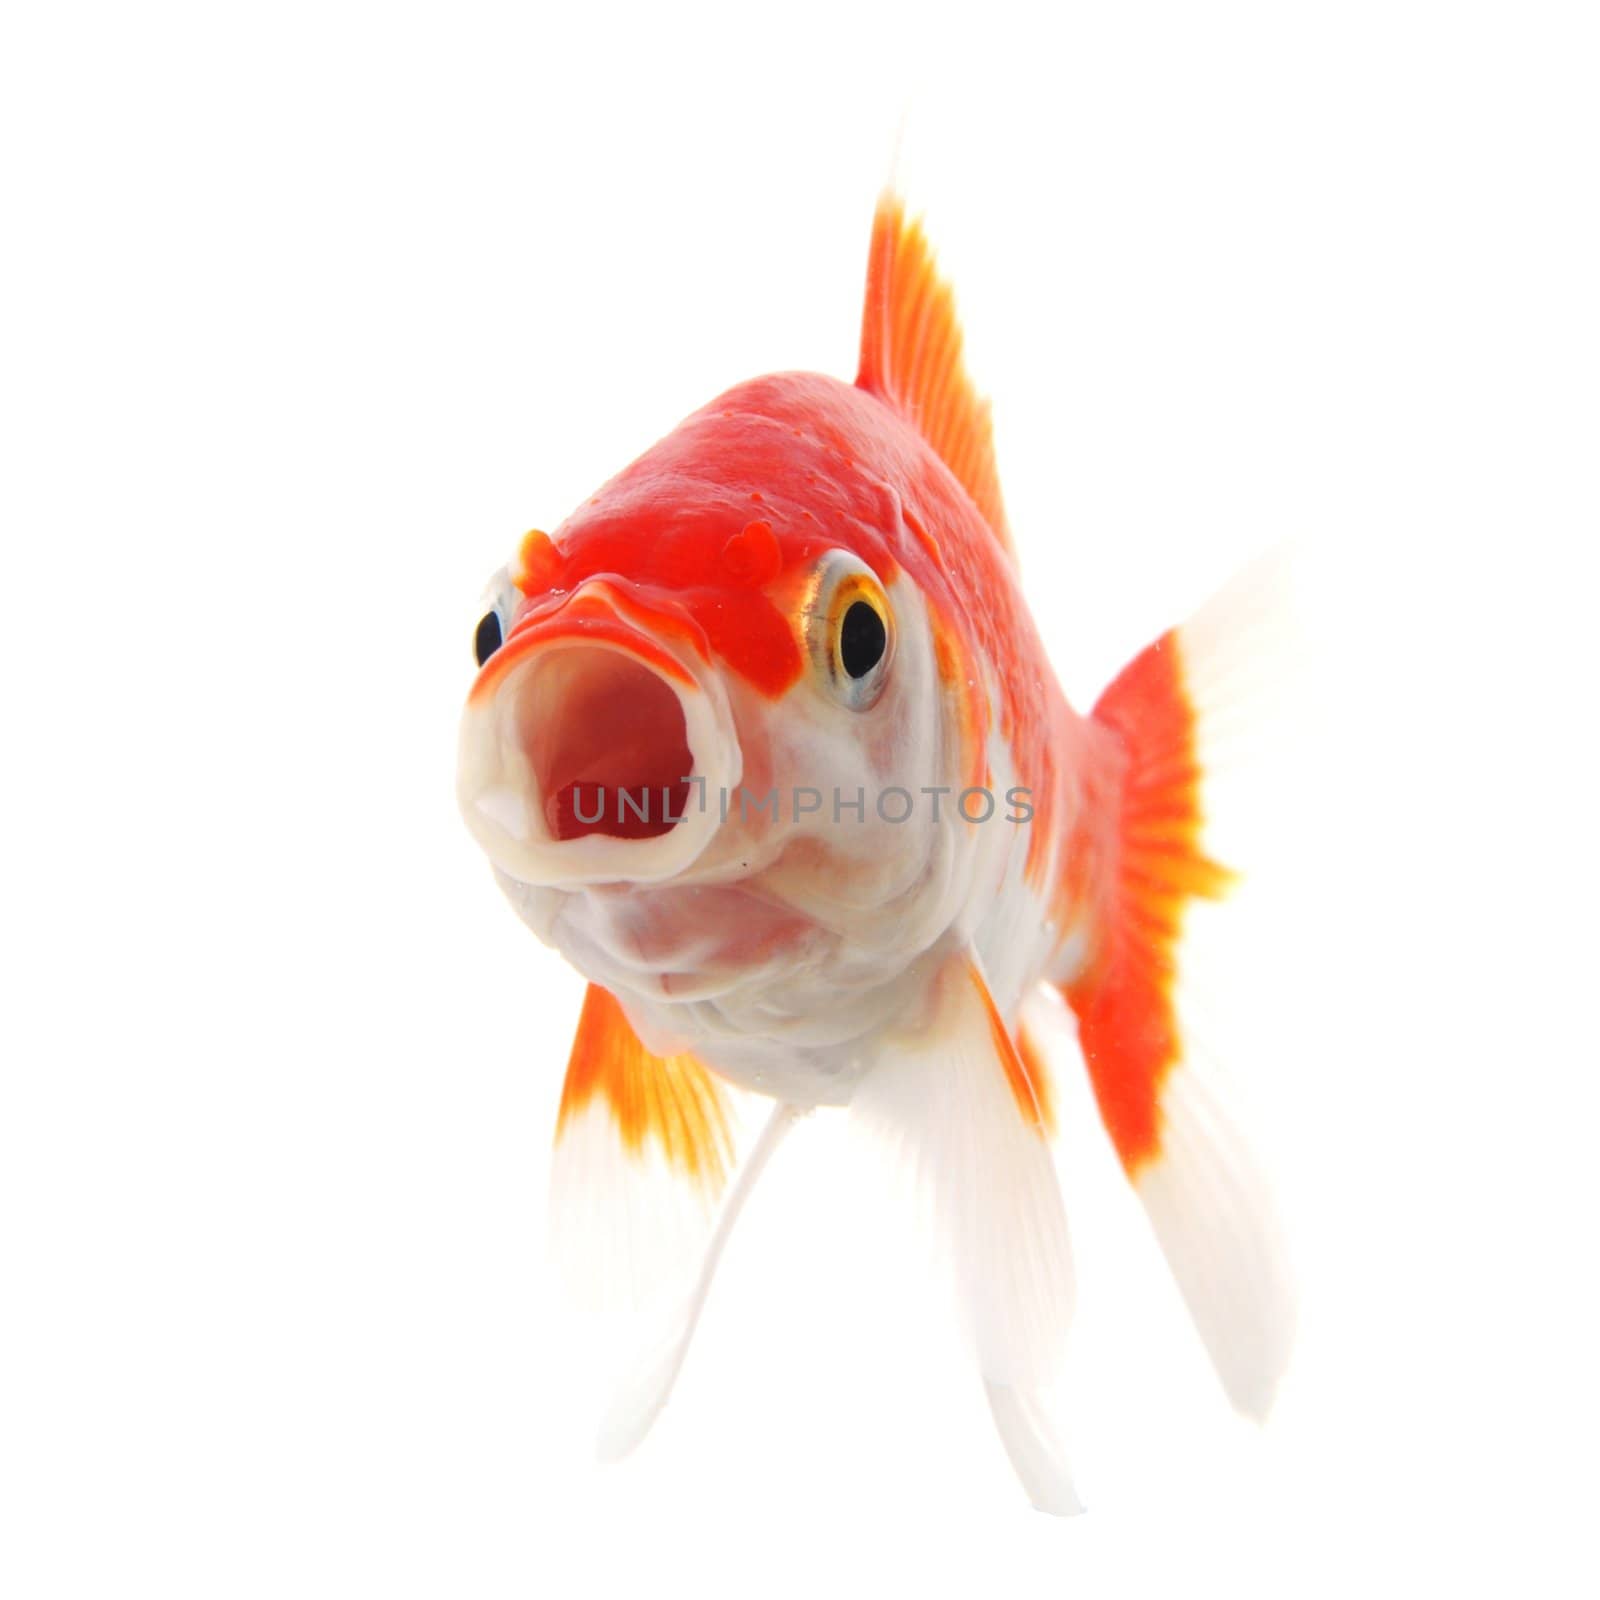 single goldfish animal isolated on white background